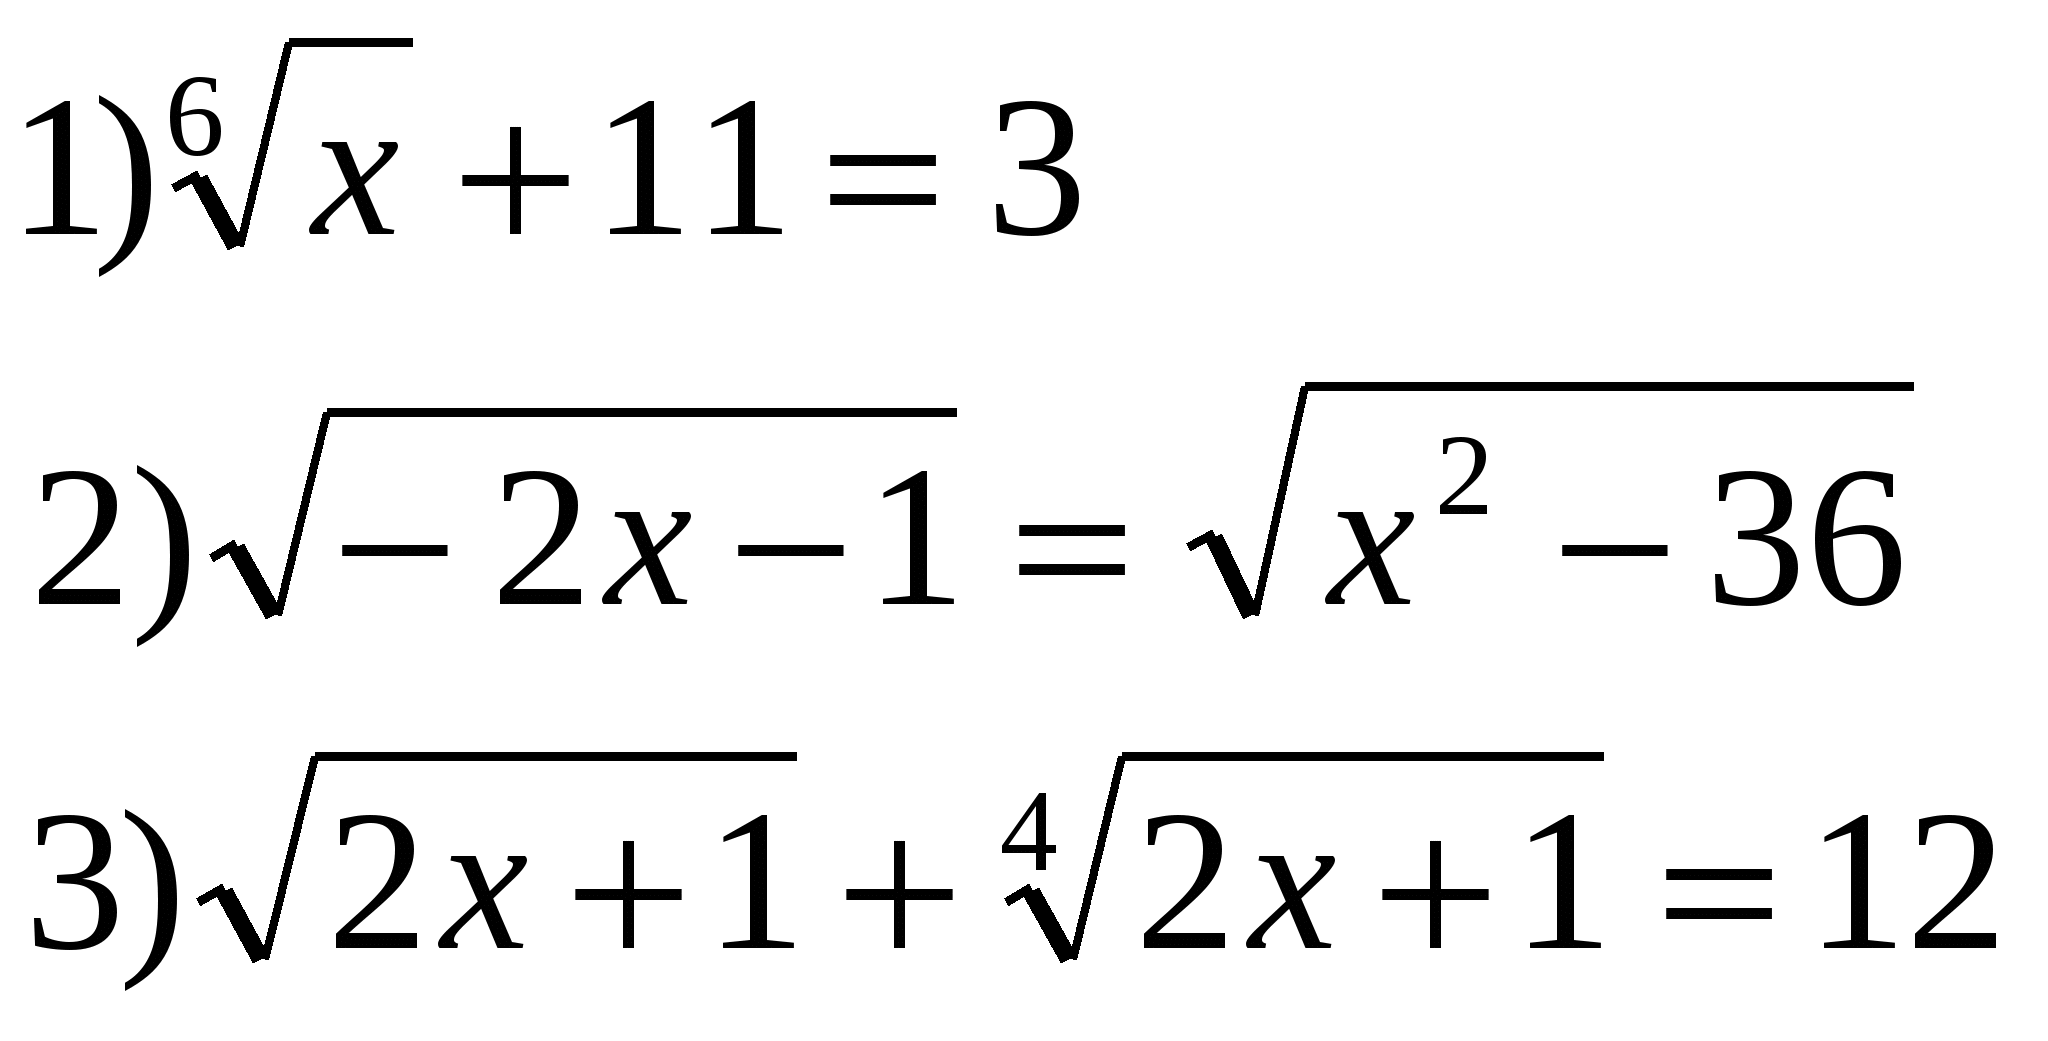 Урок по темеКонспект по алгебре иначалу анализа на тему Иррациональные уравнения (11 класс)